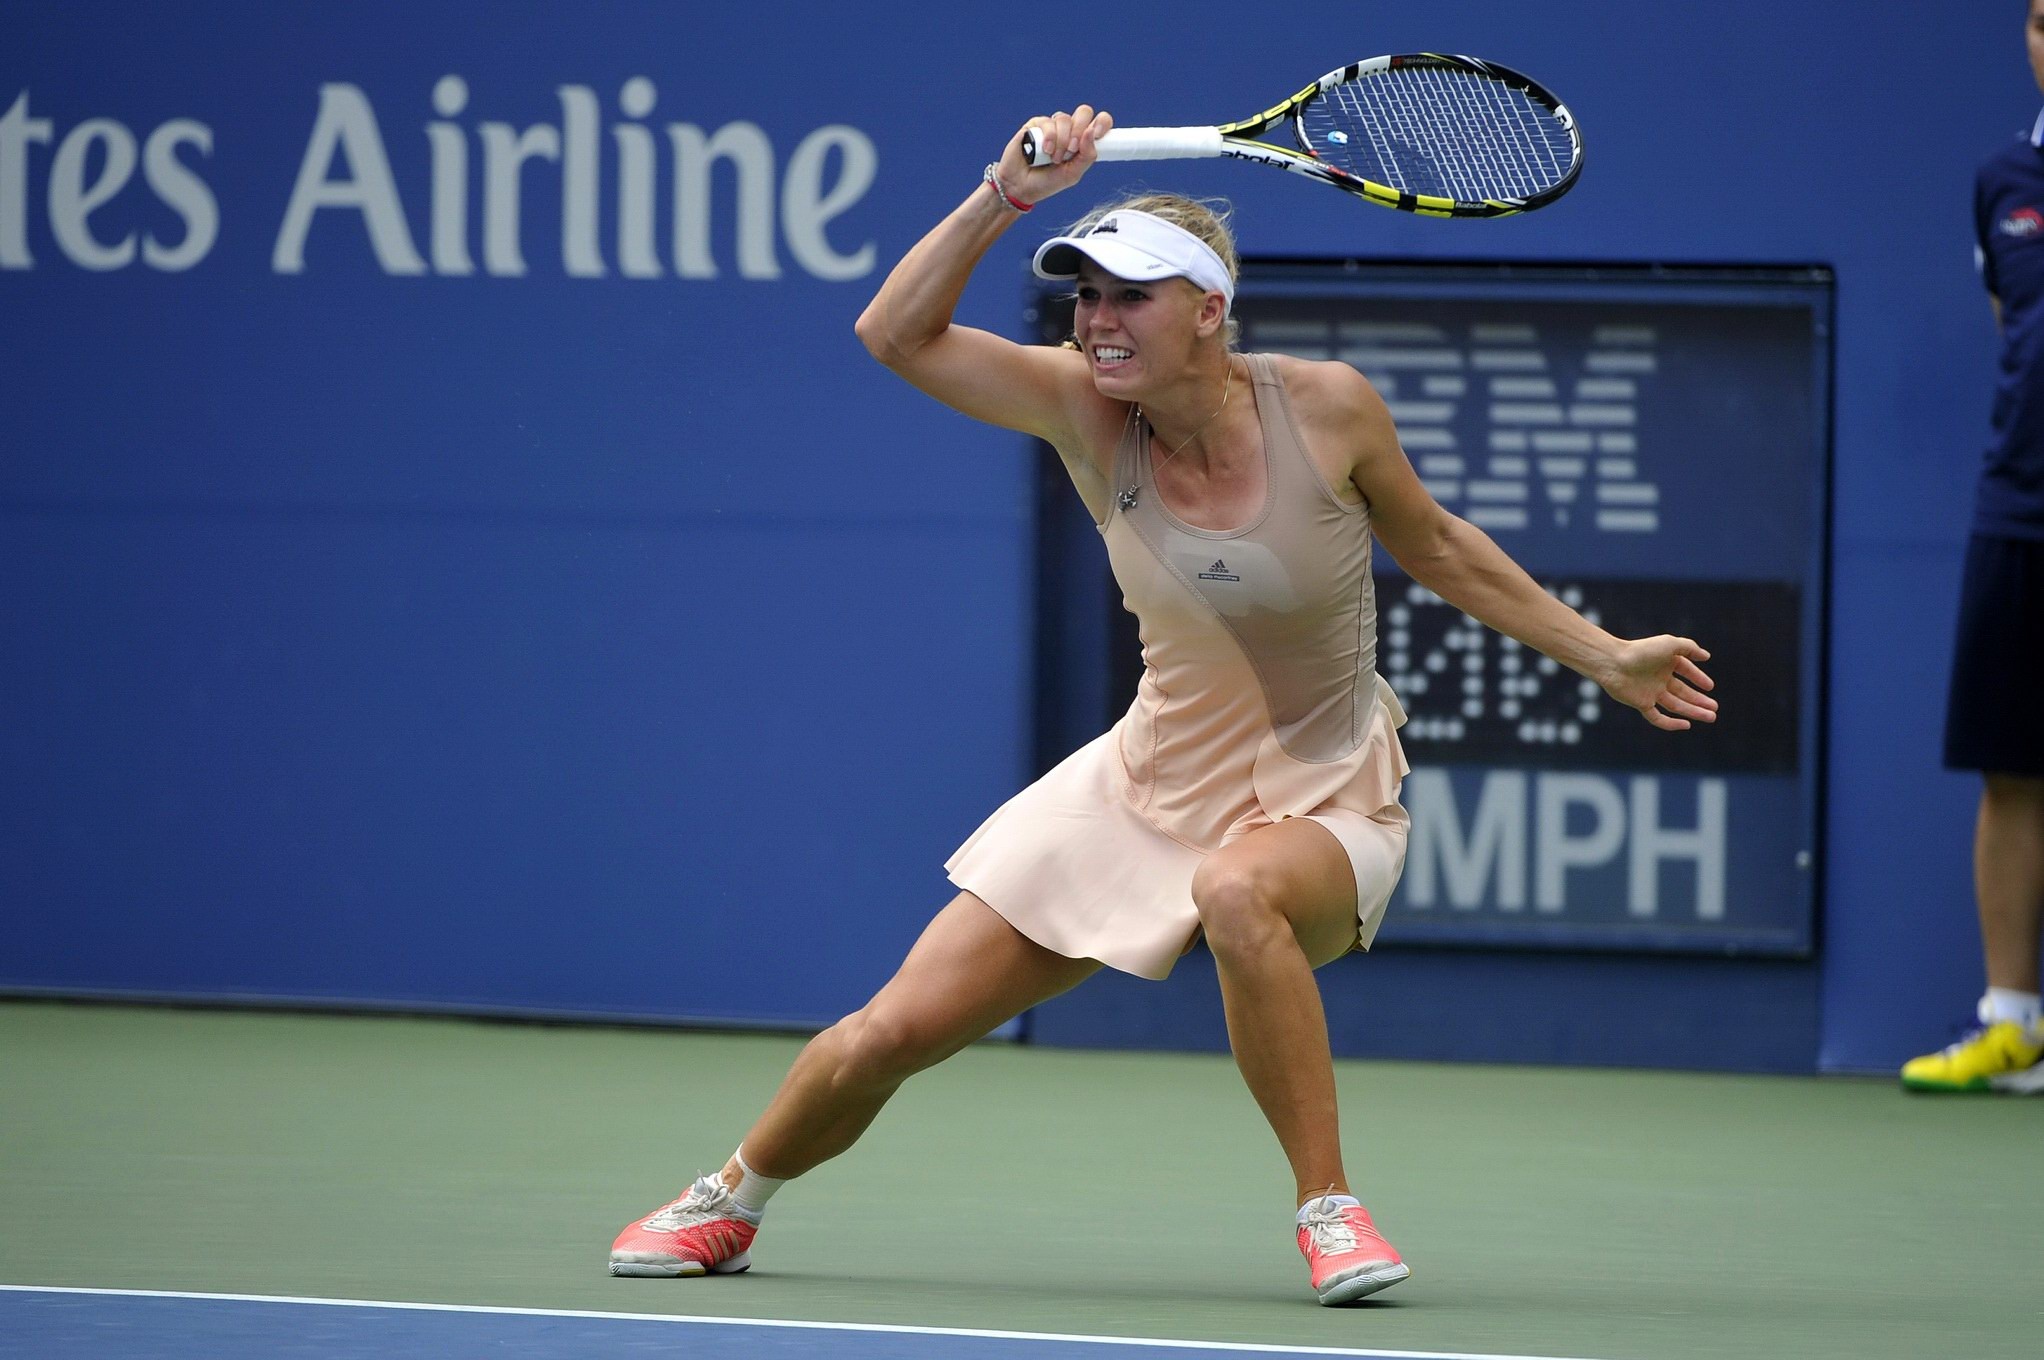 Caroline wozniacki che mostra le sue mutandine gialle al torneo di tennis us open 
 #75186756